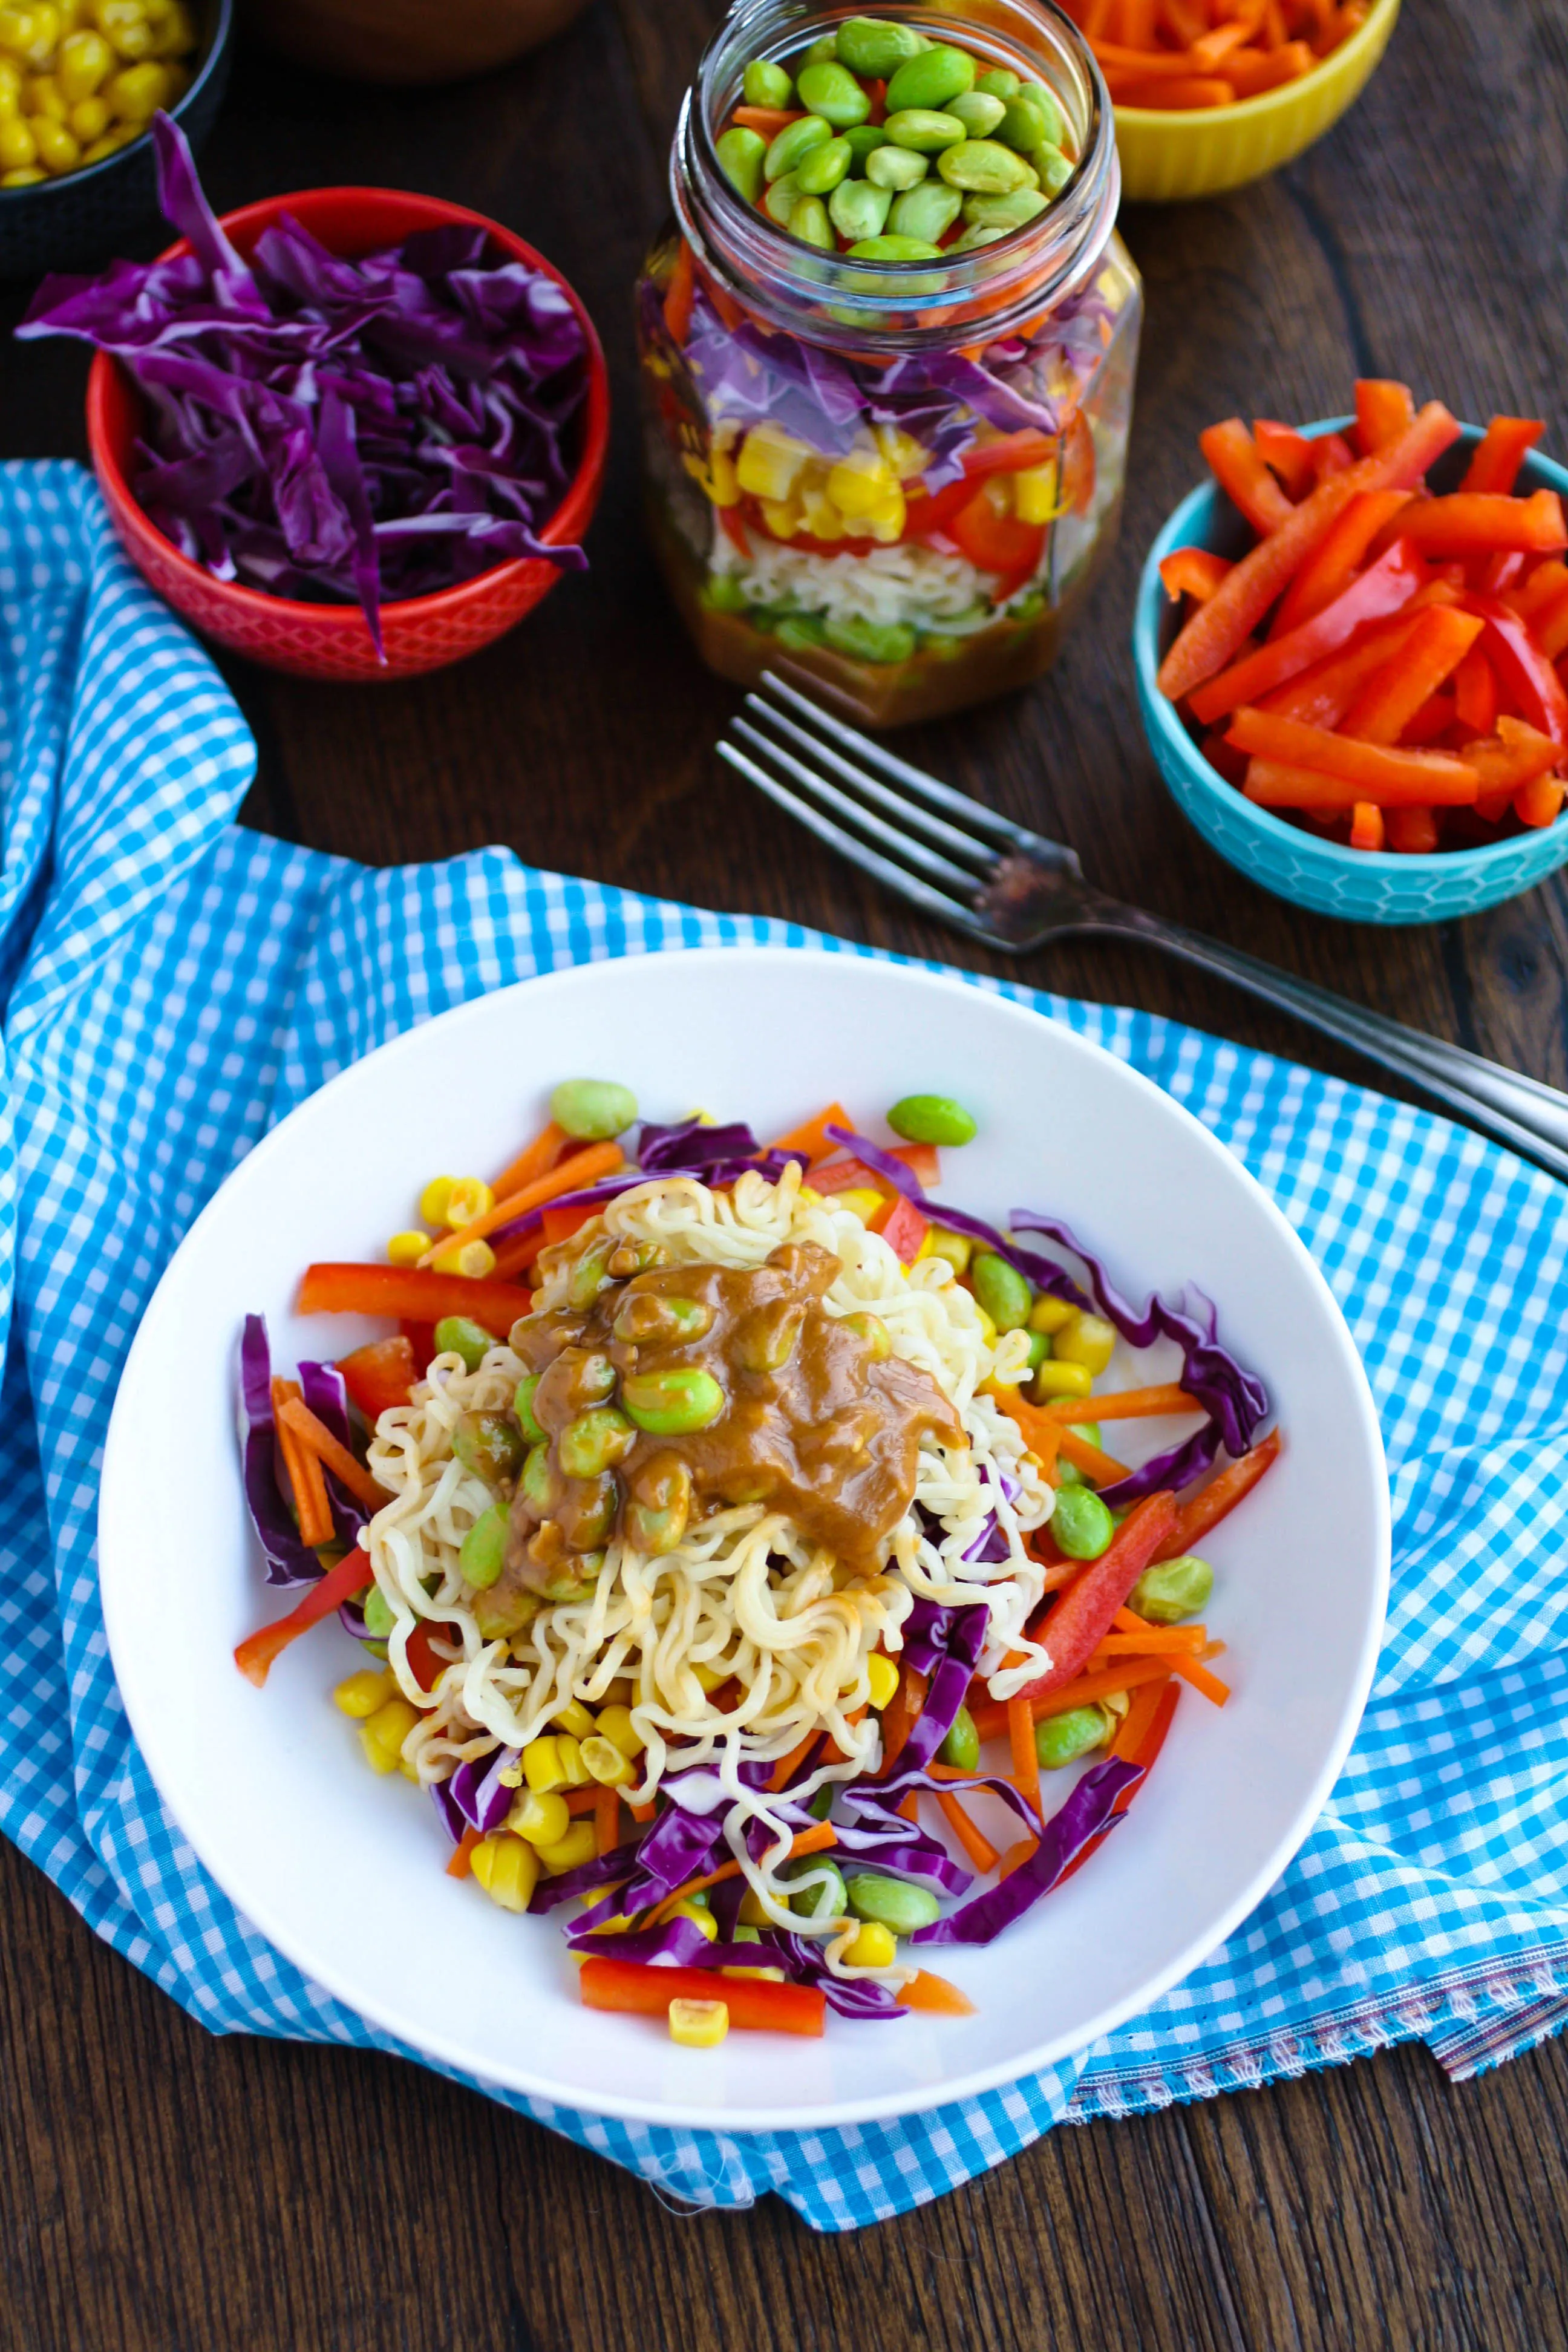 https://www.azgrabaplate.com/wp-content/uploads/Asian-Noodle-Salad-Jar-Spicy-Peanut-Dressing4.jpg.webp